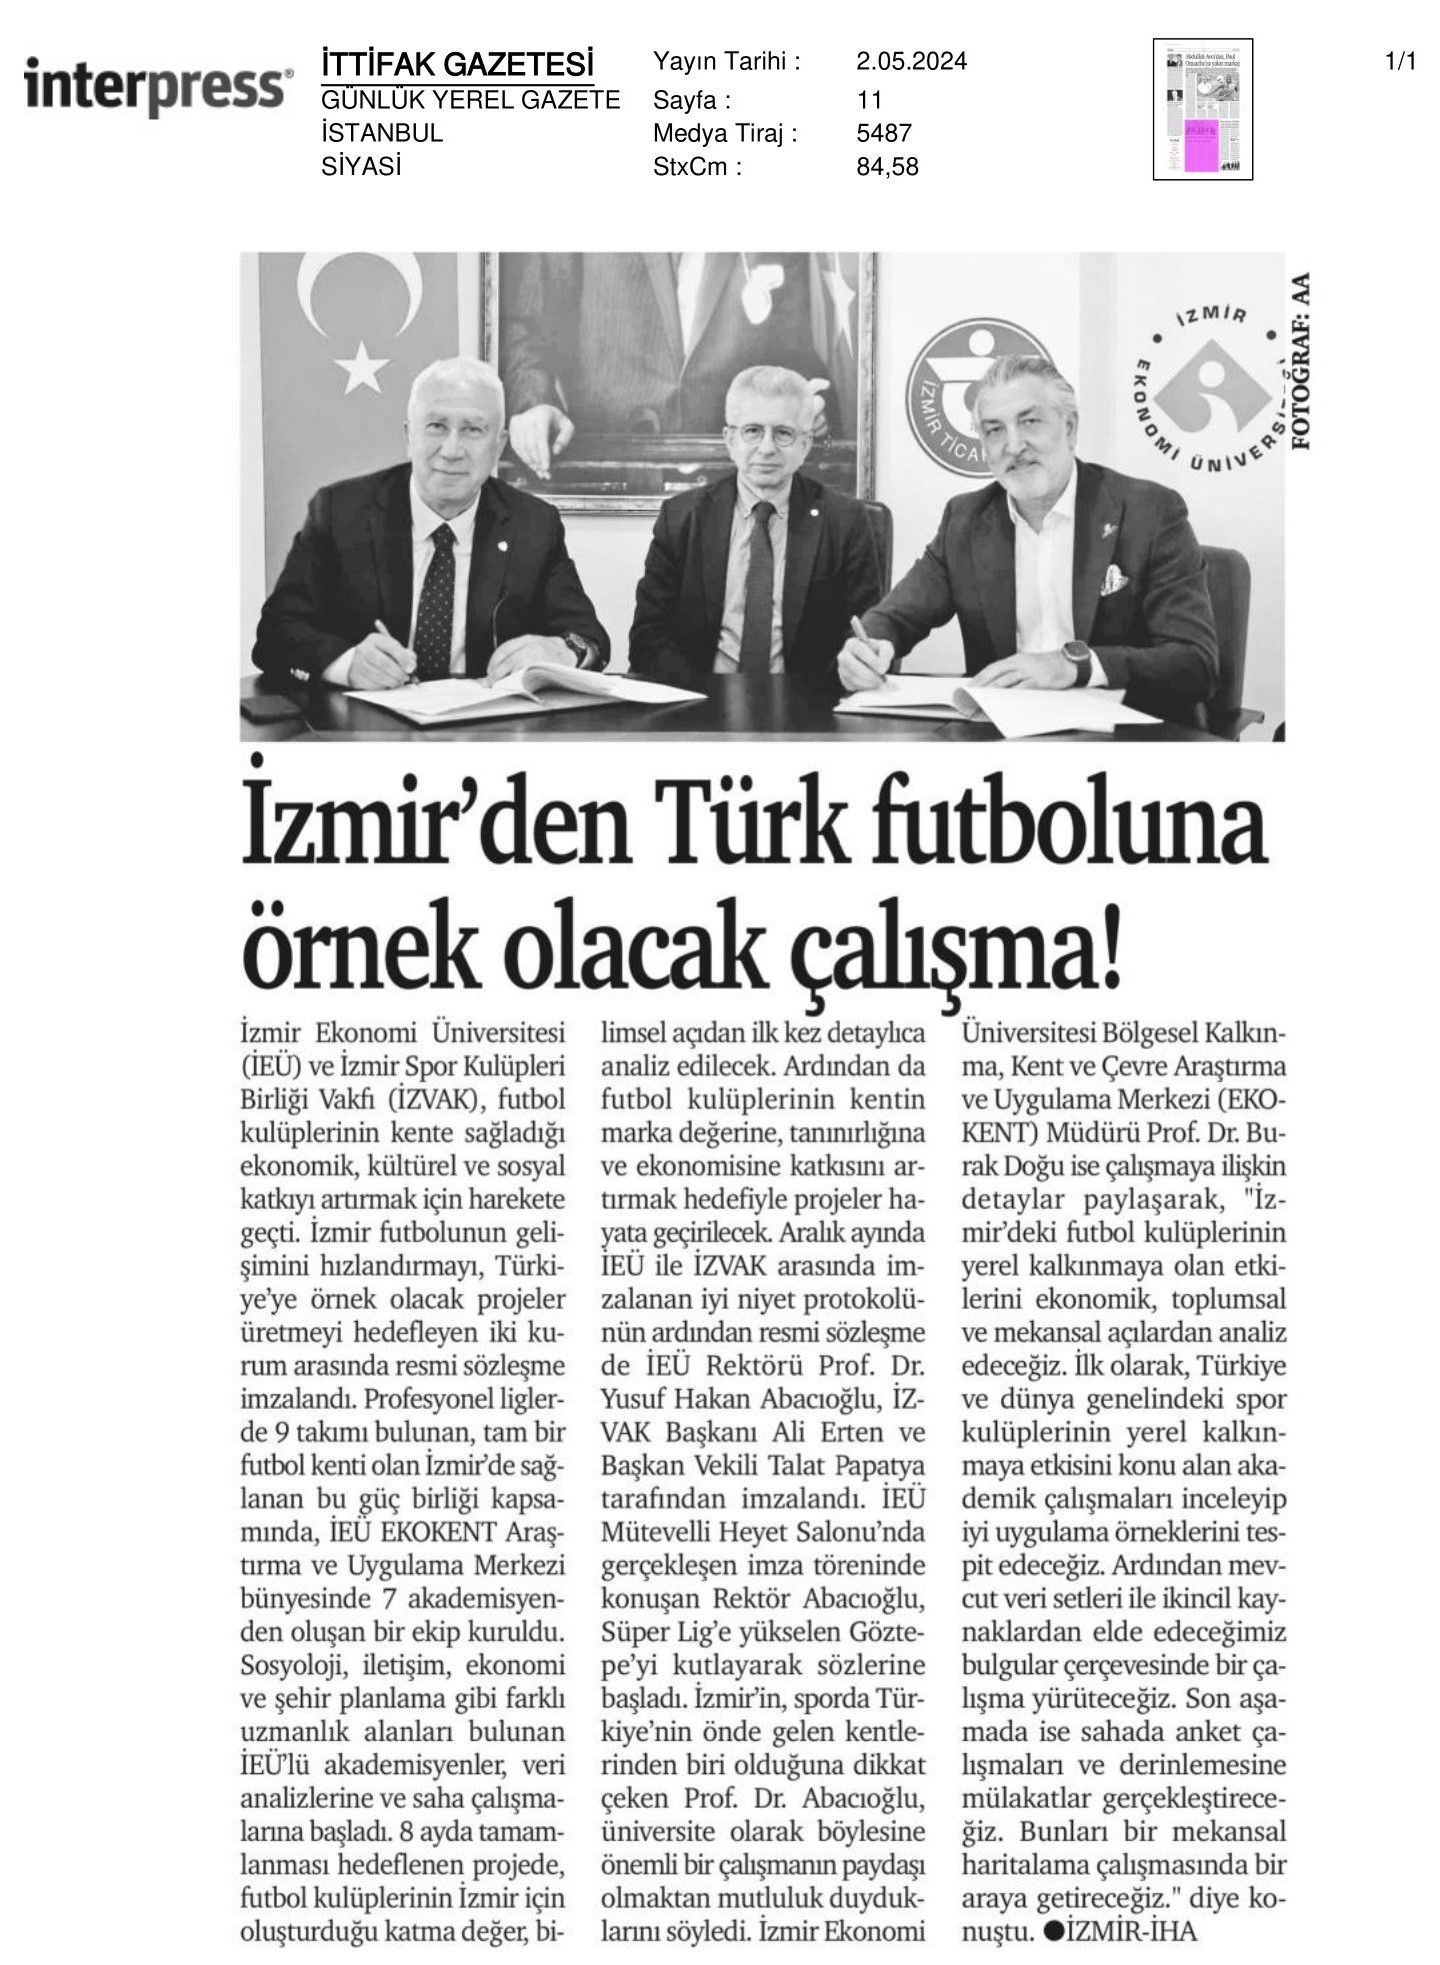 İzmir’den Türk Futboluna Örnek Olacak Çalışma